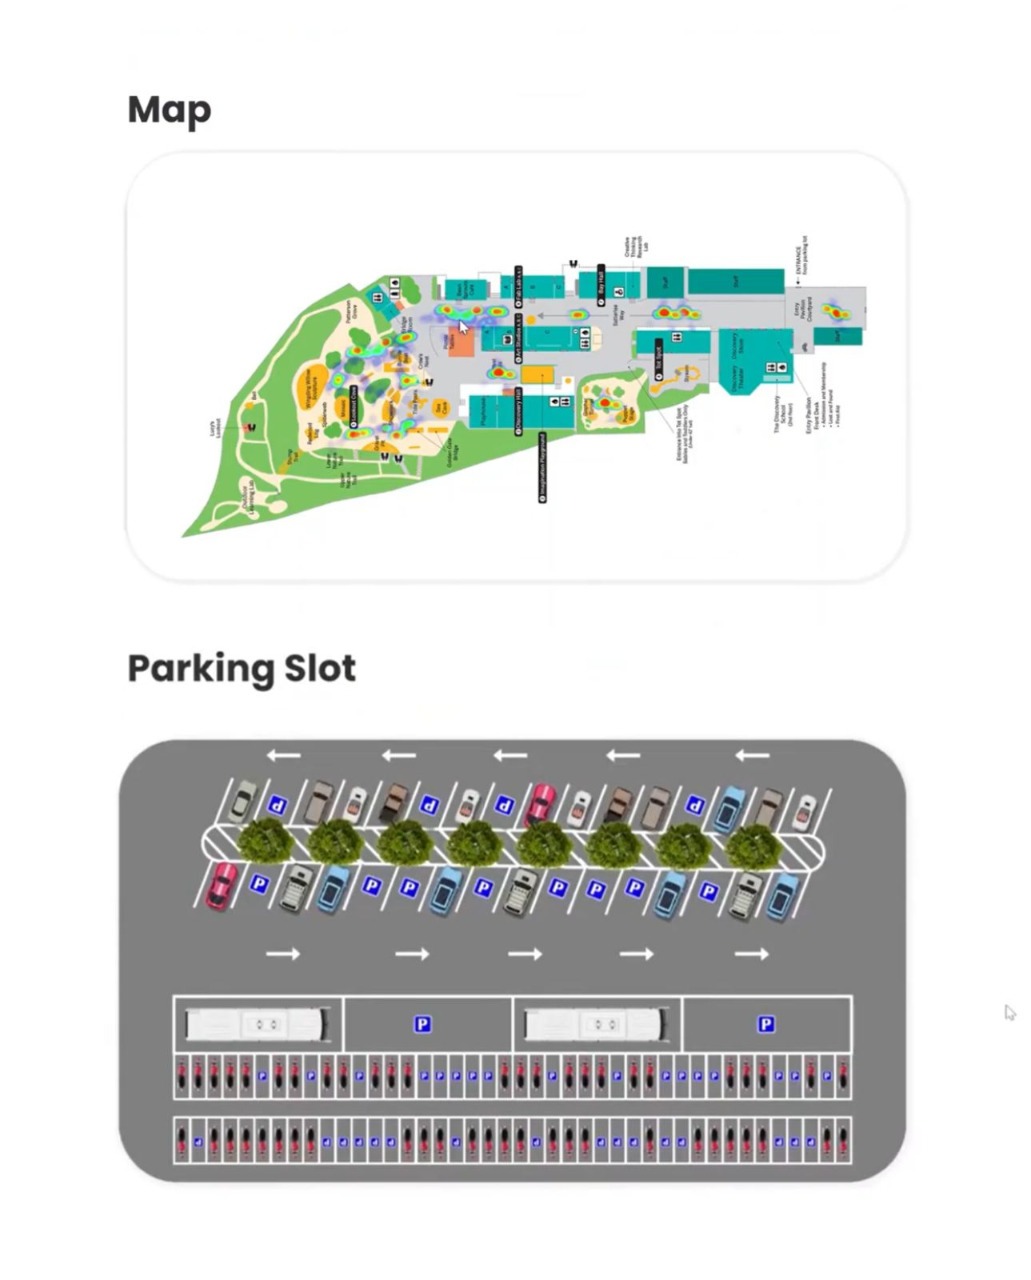 Salah satu fitur unggulan dalam Urbaneur dimana terdapat informasi kepadatan pengunjung dan lahan parkir dalam peta secara real-time